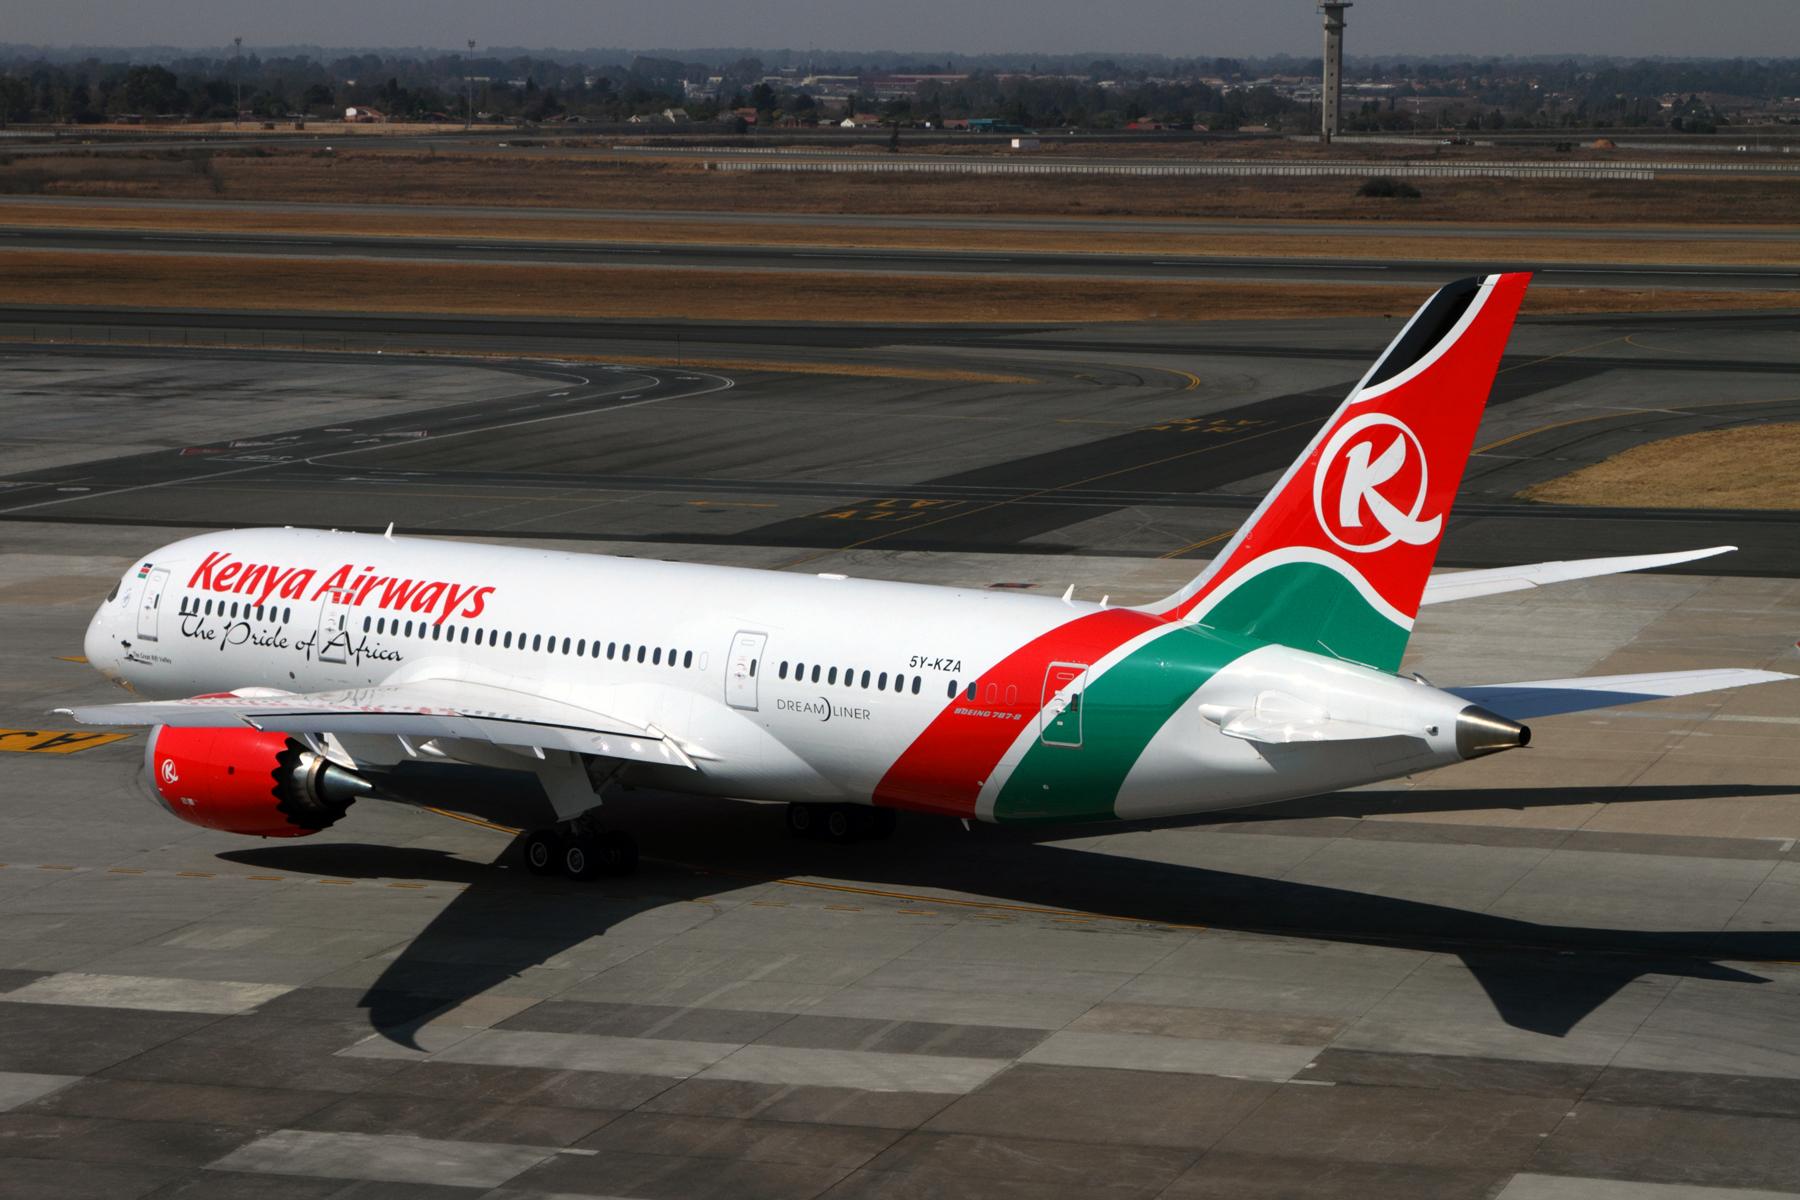 Kenya Airways 787-8